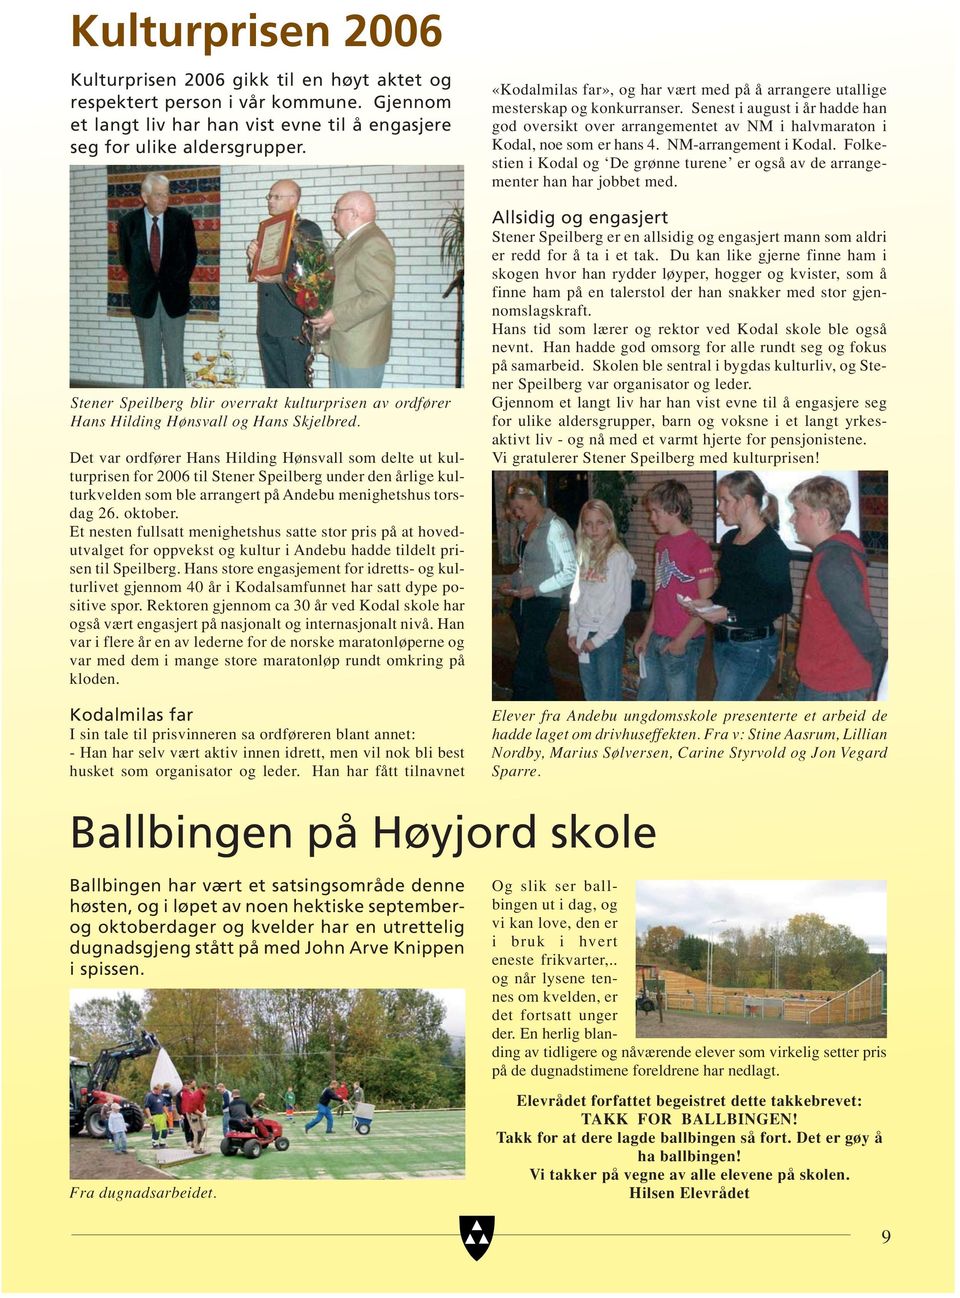 Det var ordfører Hans Hilding Hønsvall som delte ut kulturprisen for 2006 til Stener Speilberg under den årlige kulturkvelden som ble arrangert på Andebu menighetshus torsdag 26. oktober.